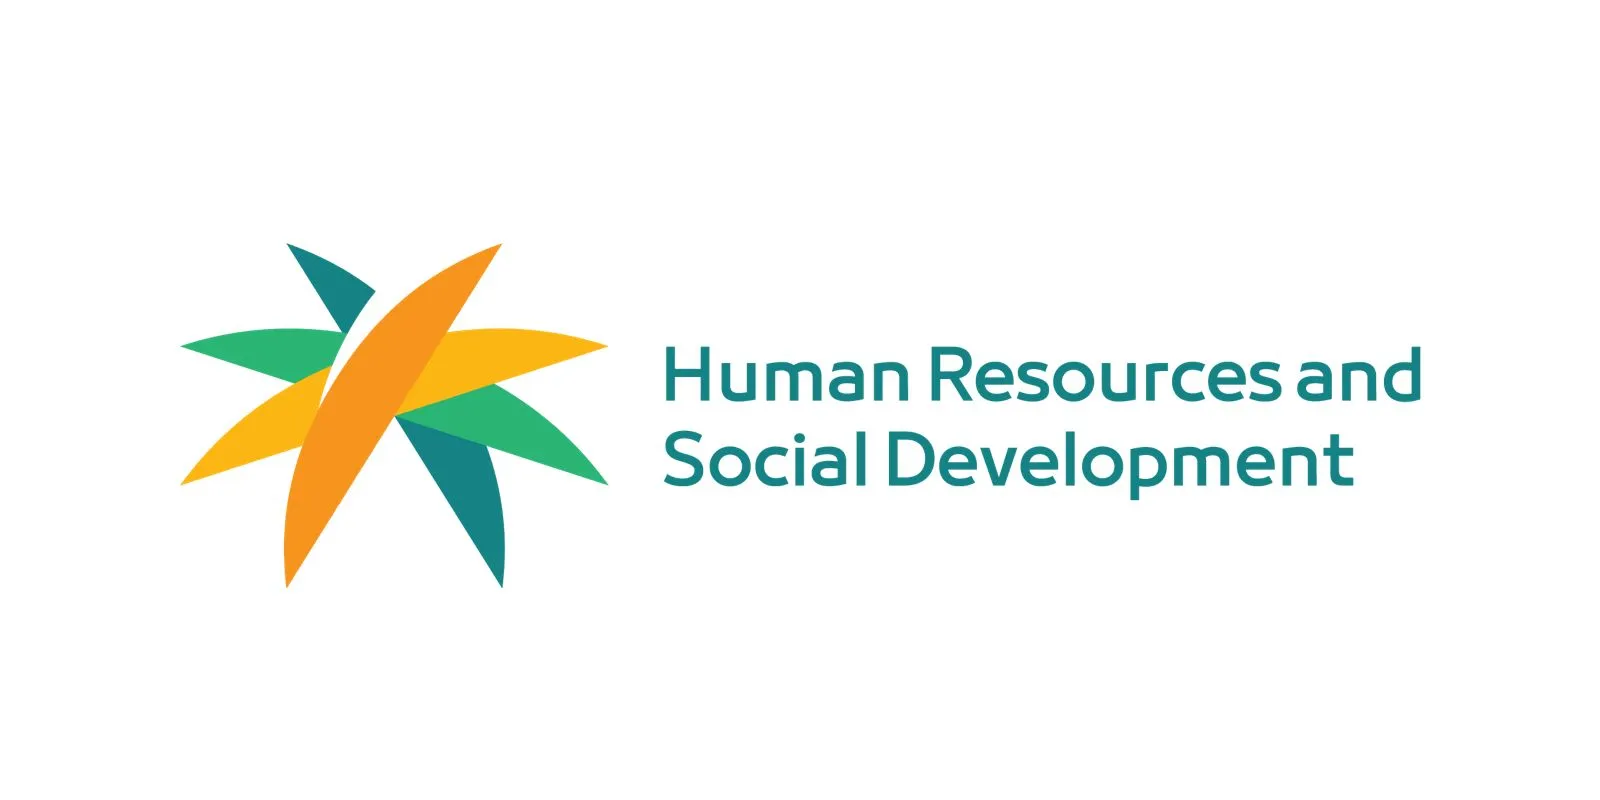 وزارة الموارد البشرية والتنمية الاجتماعية